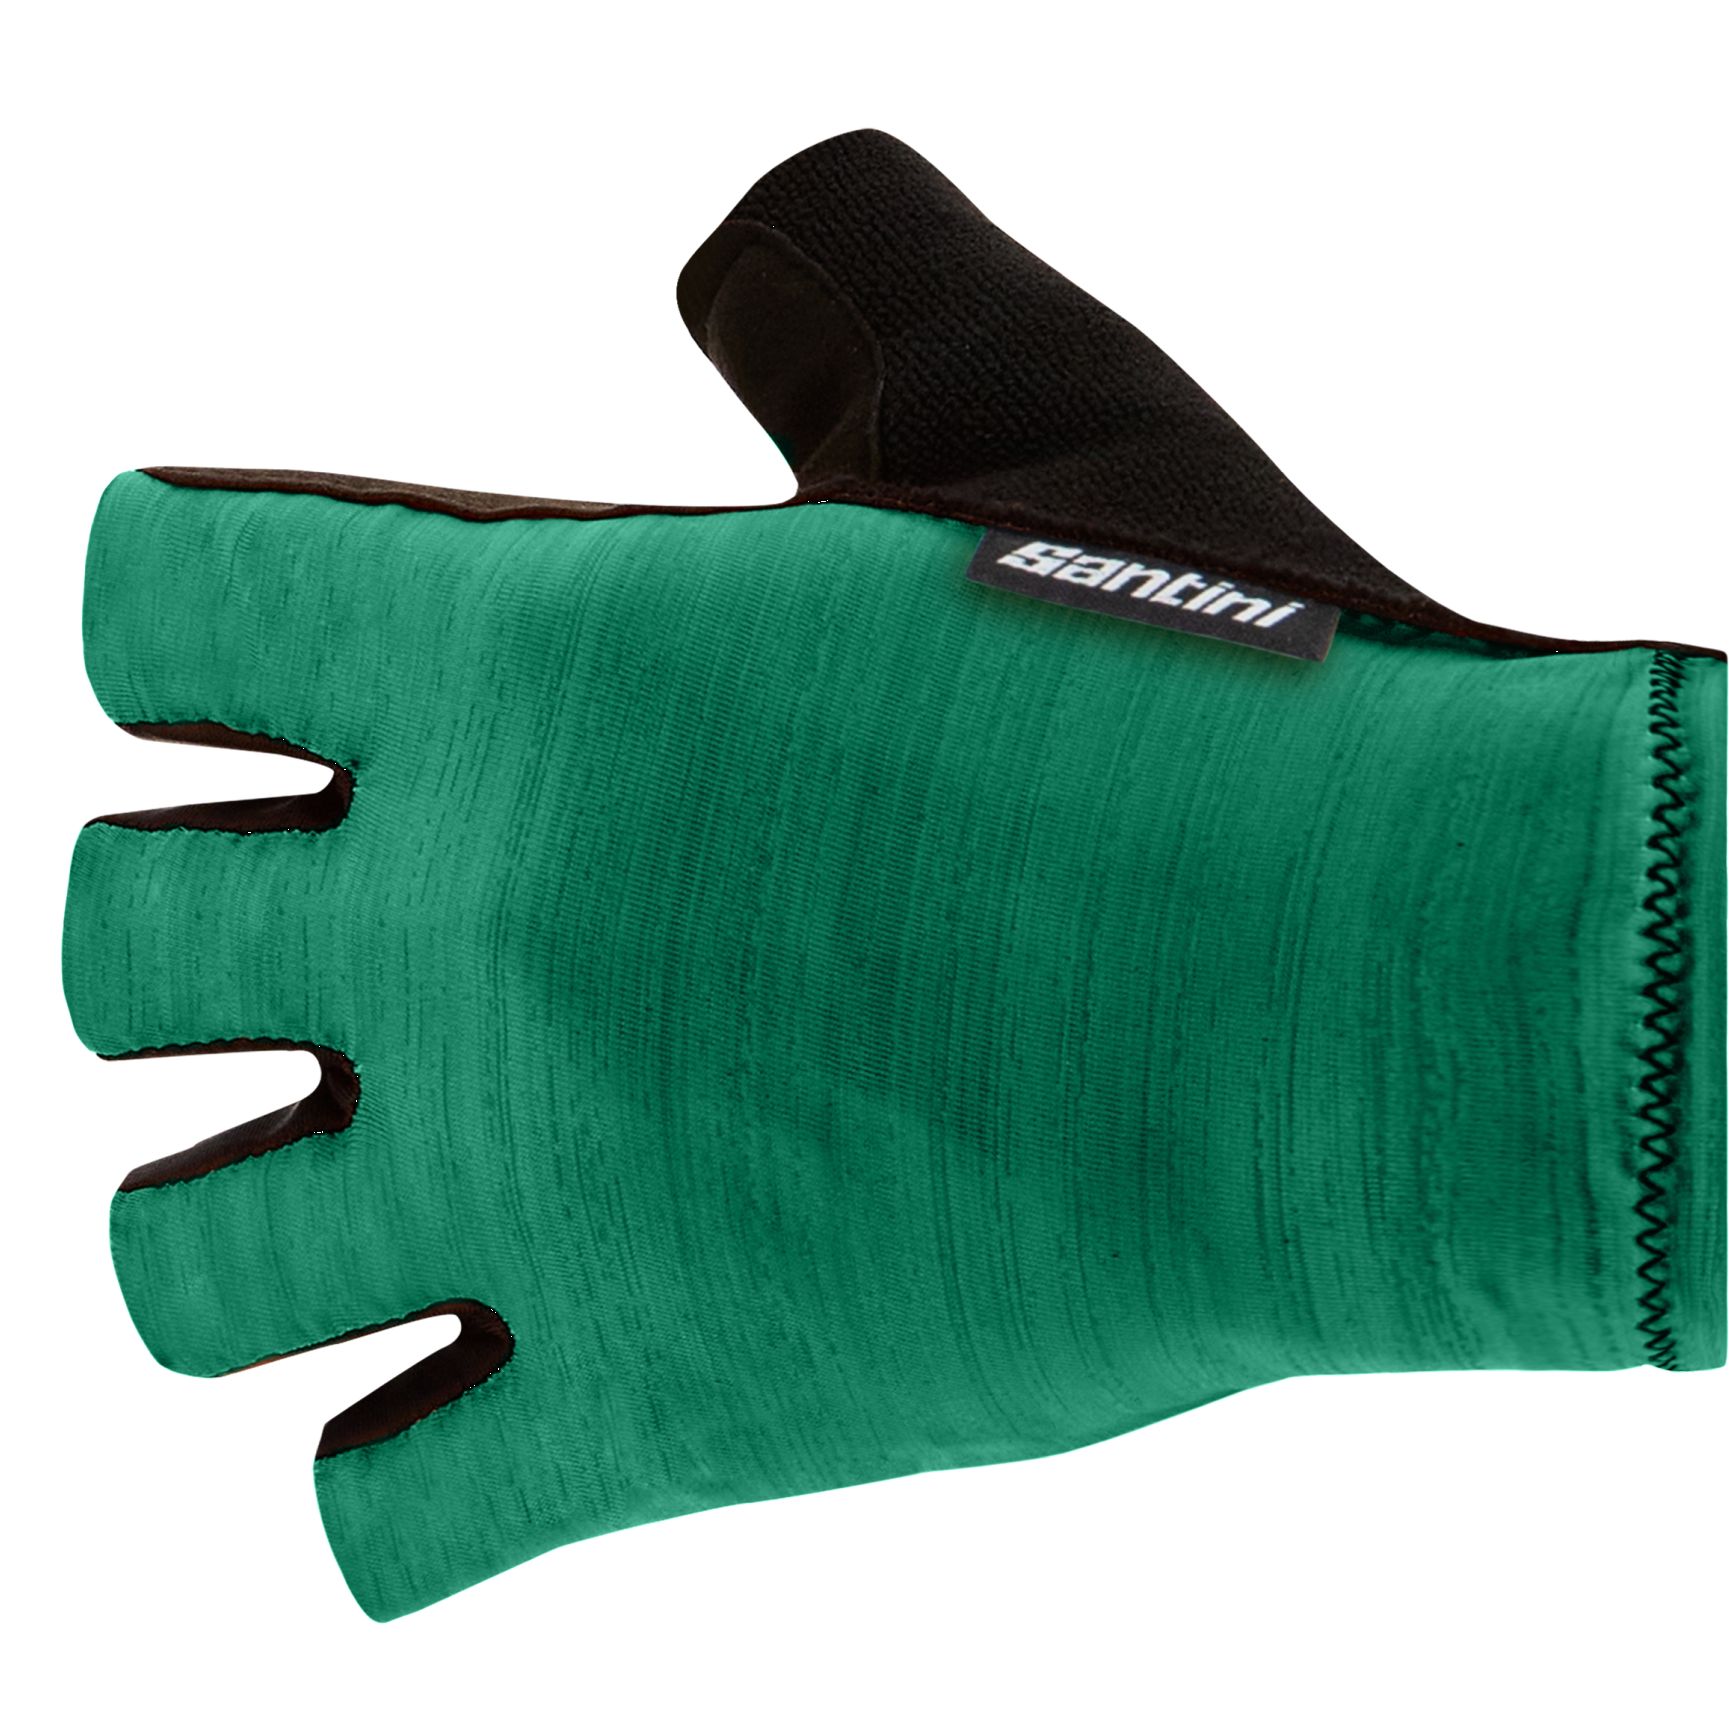 Produktbild von Santini Cubo Kurzfinger-Handschuhe 1S367CLCUBO - grün VE